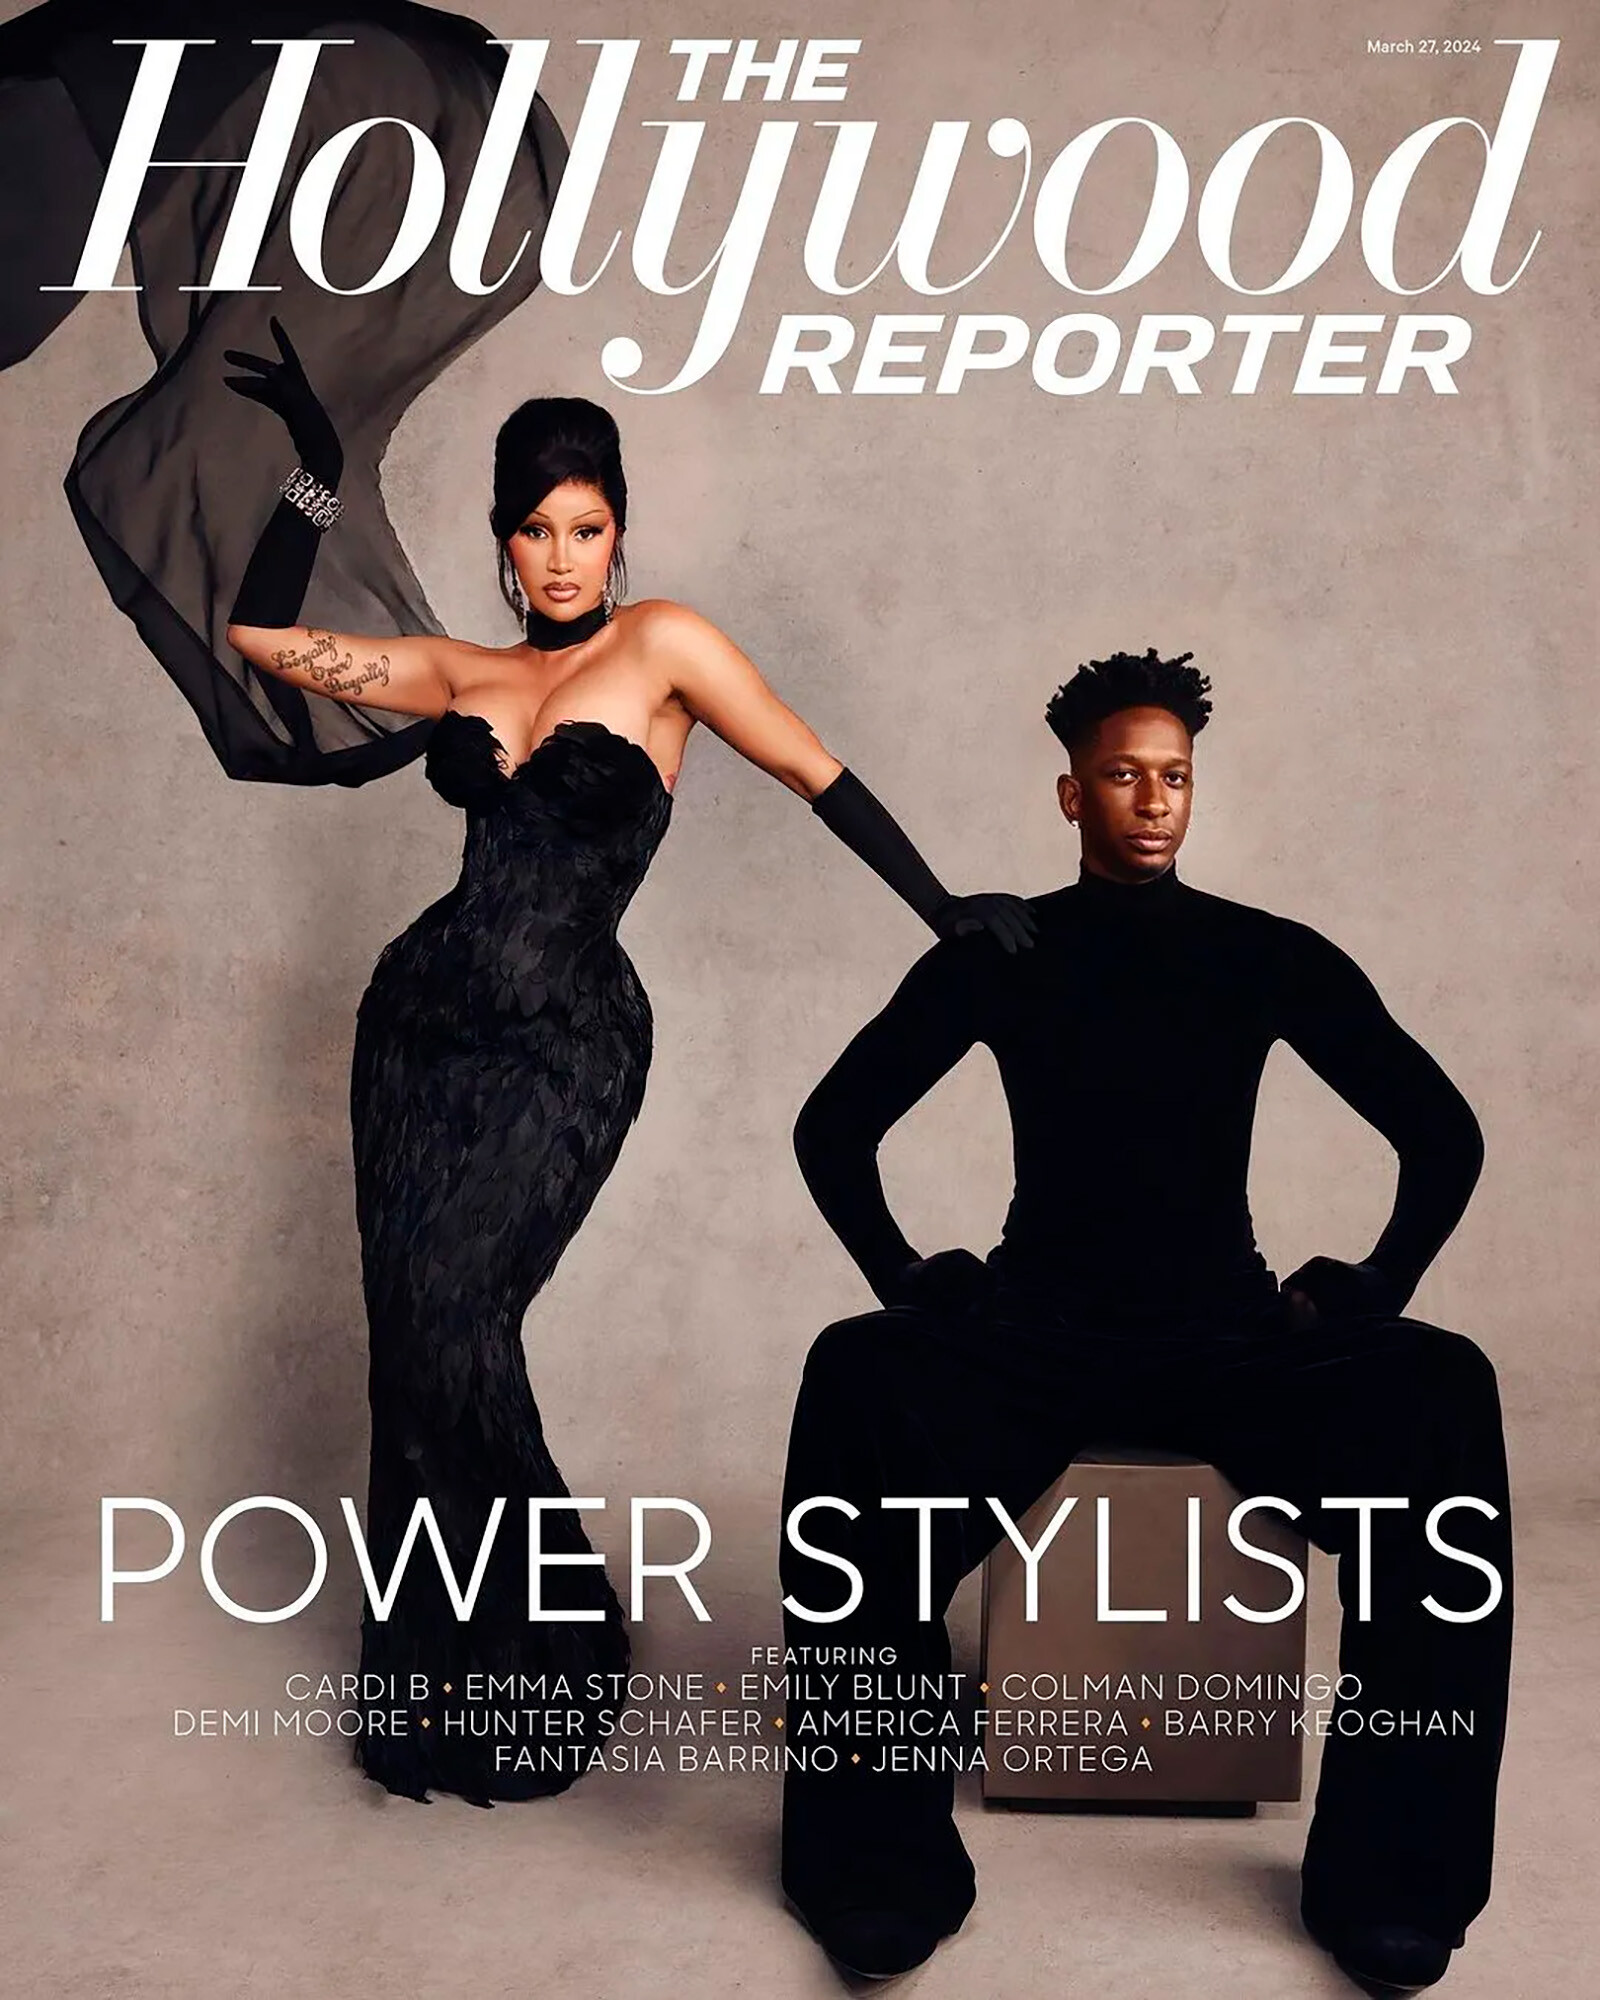 Карди Би и стилист Коллин Картер на обложке The Hollywood Reporter